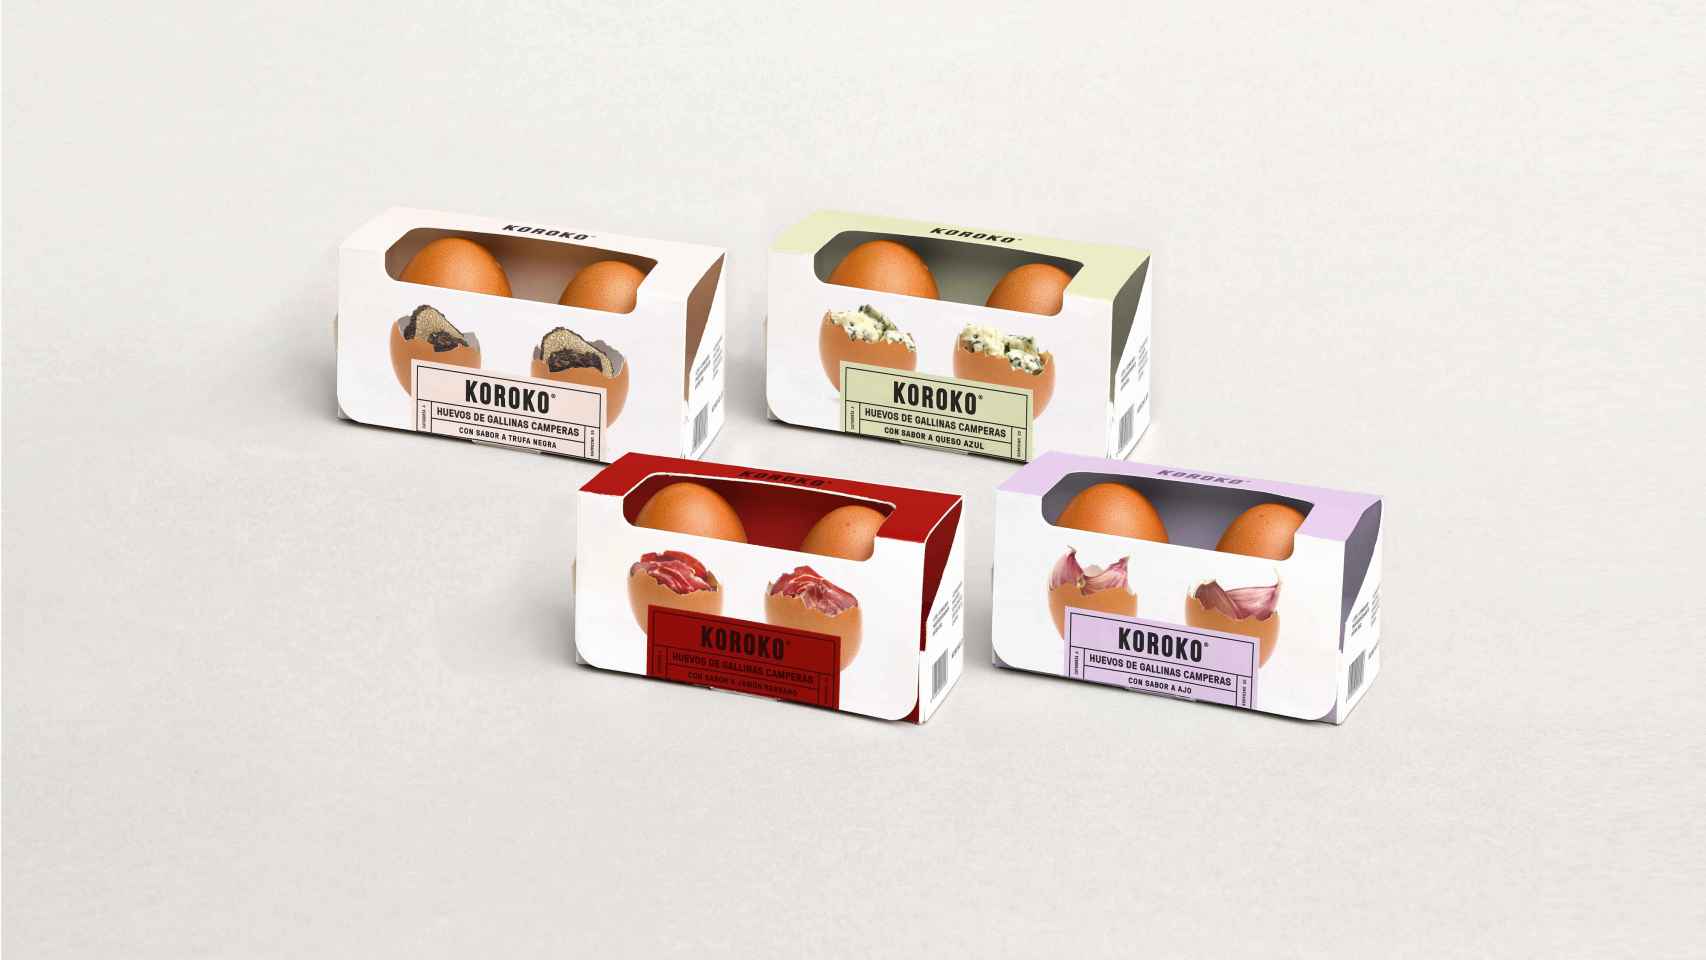 La startup Koroko es pionera en la producción de huevos de gallinas camperas de sabores que cuenta con cuatro referencias en el mercado: trufa negra, ajo, jamón y queso azul.